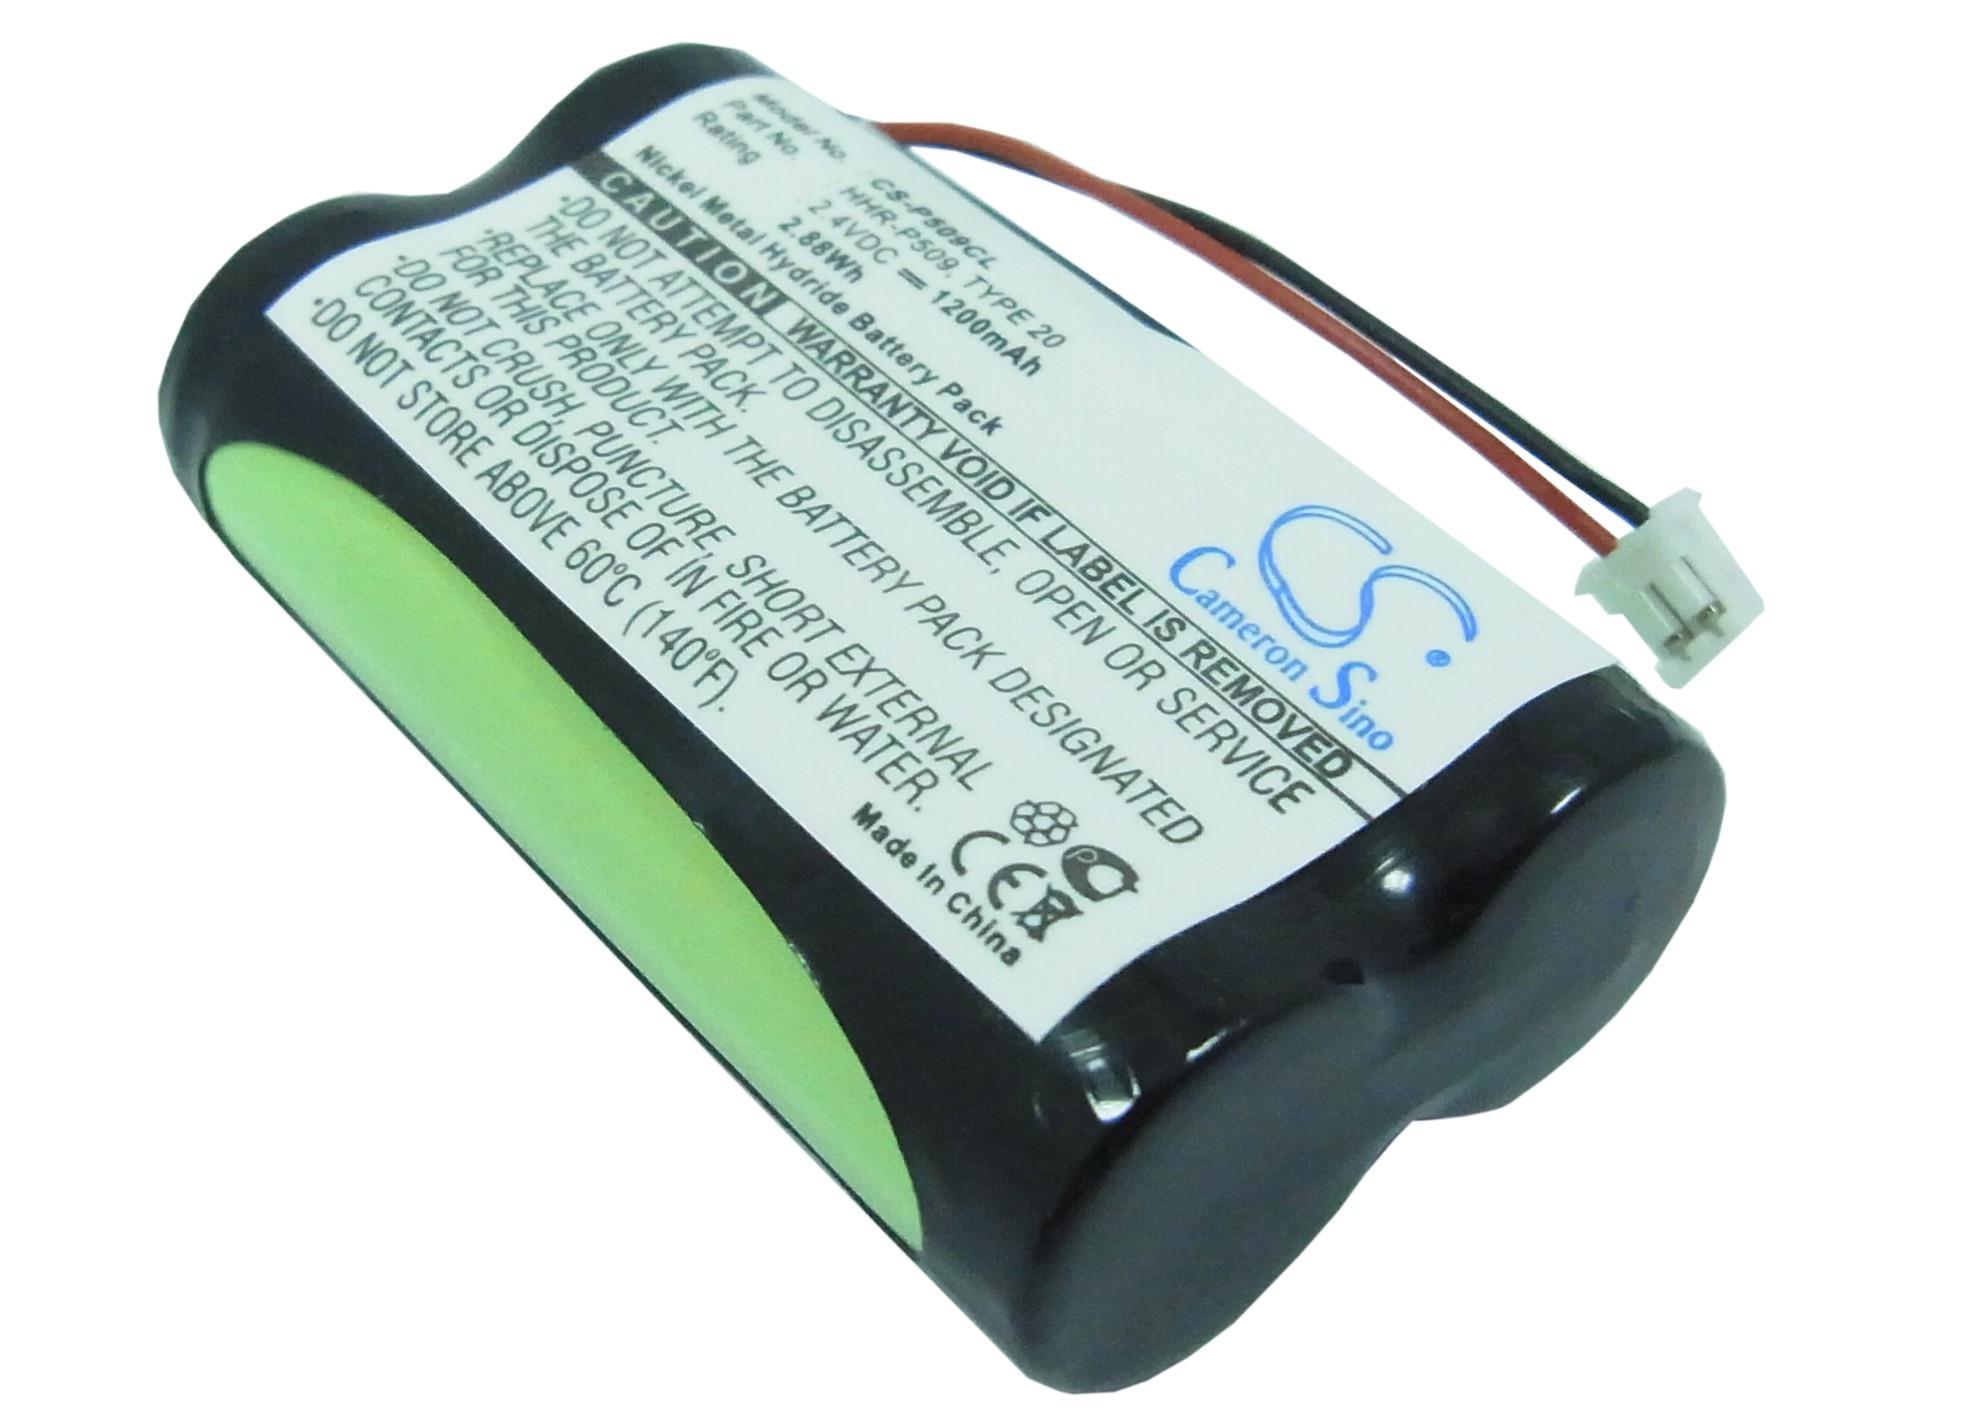 VinTrons Replacement Battery 1200mAh/2.88Wh For AT&T 509, EX L8900, EX L8901, EX L8945, EX LA8962, EX LI8962